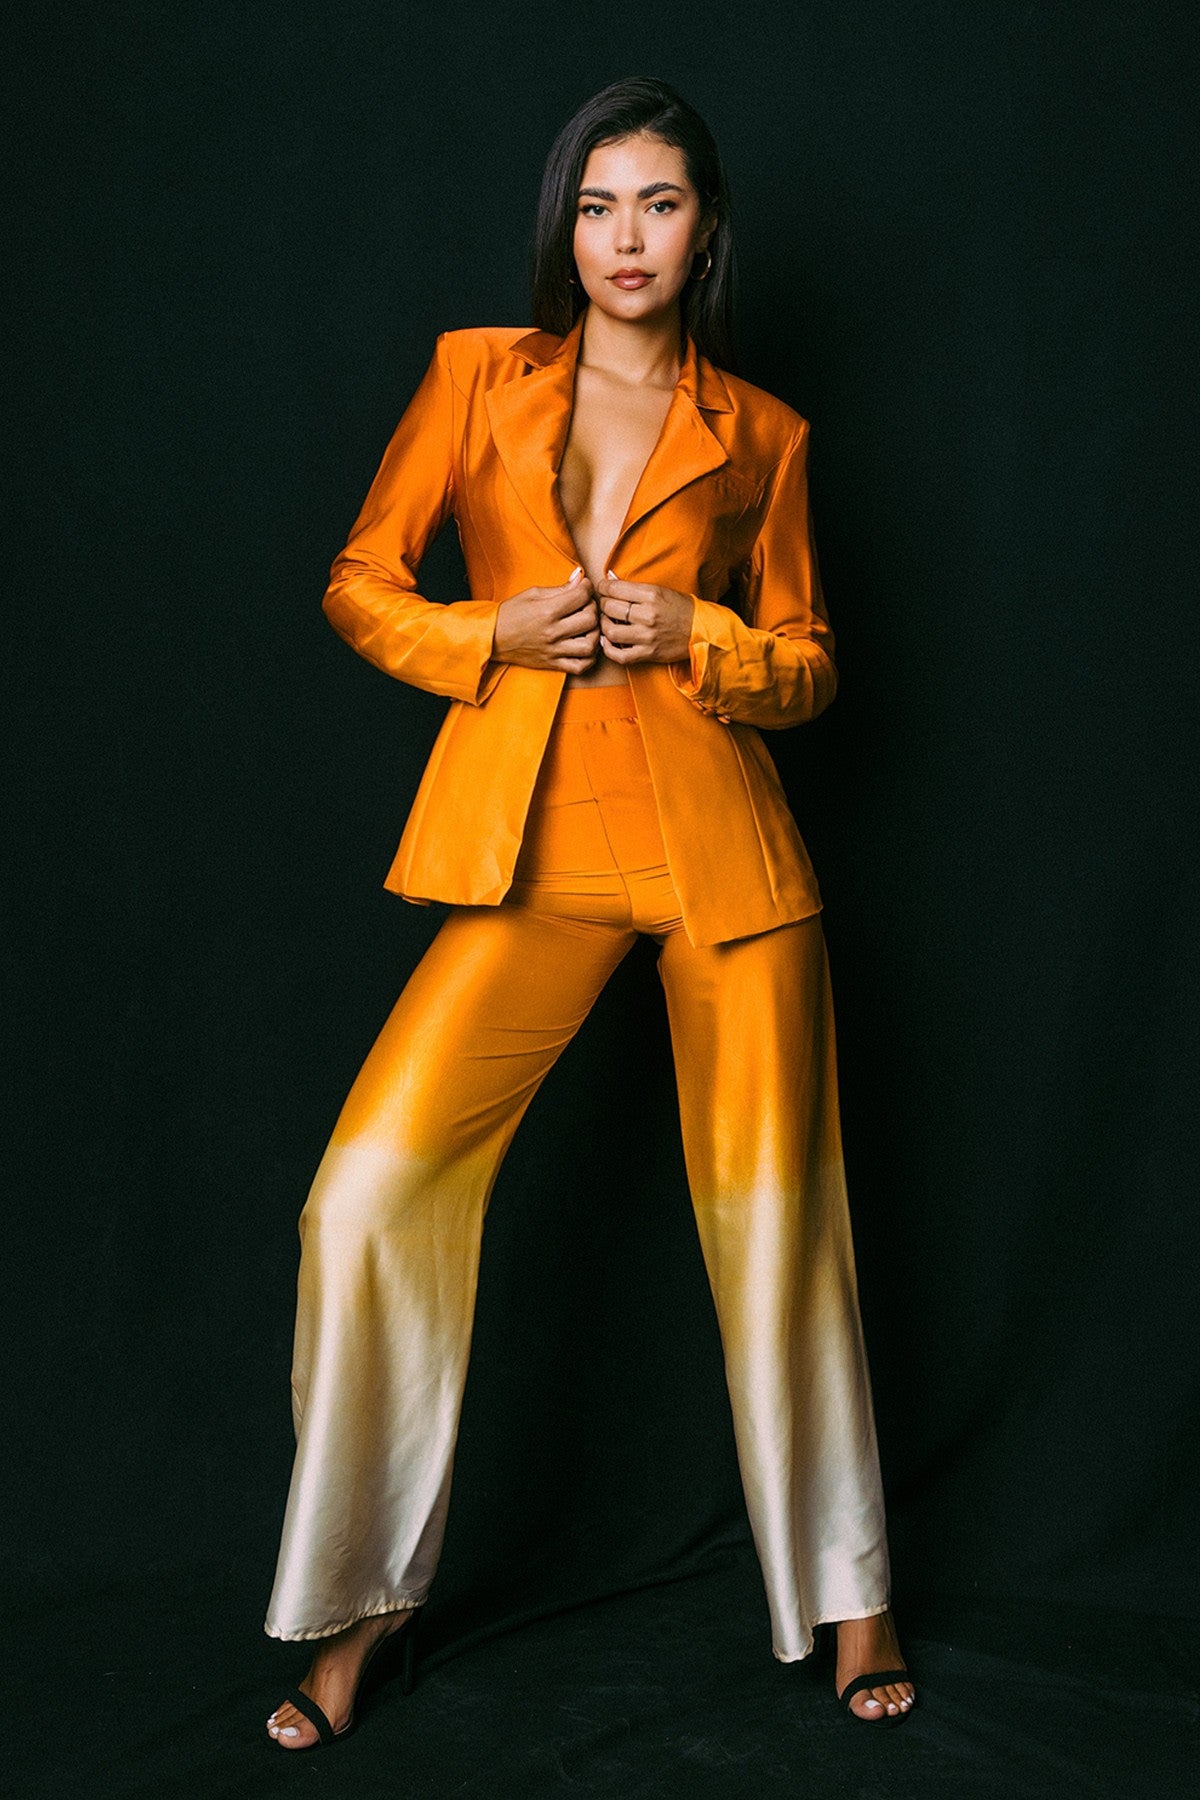 The Orange Ombré Suit